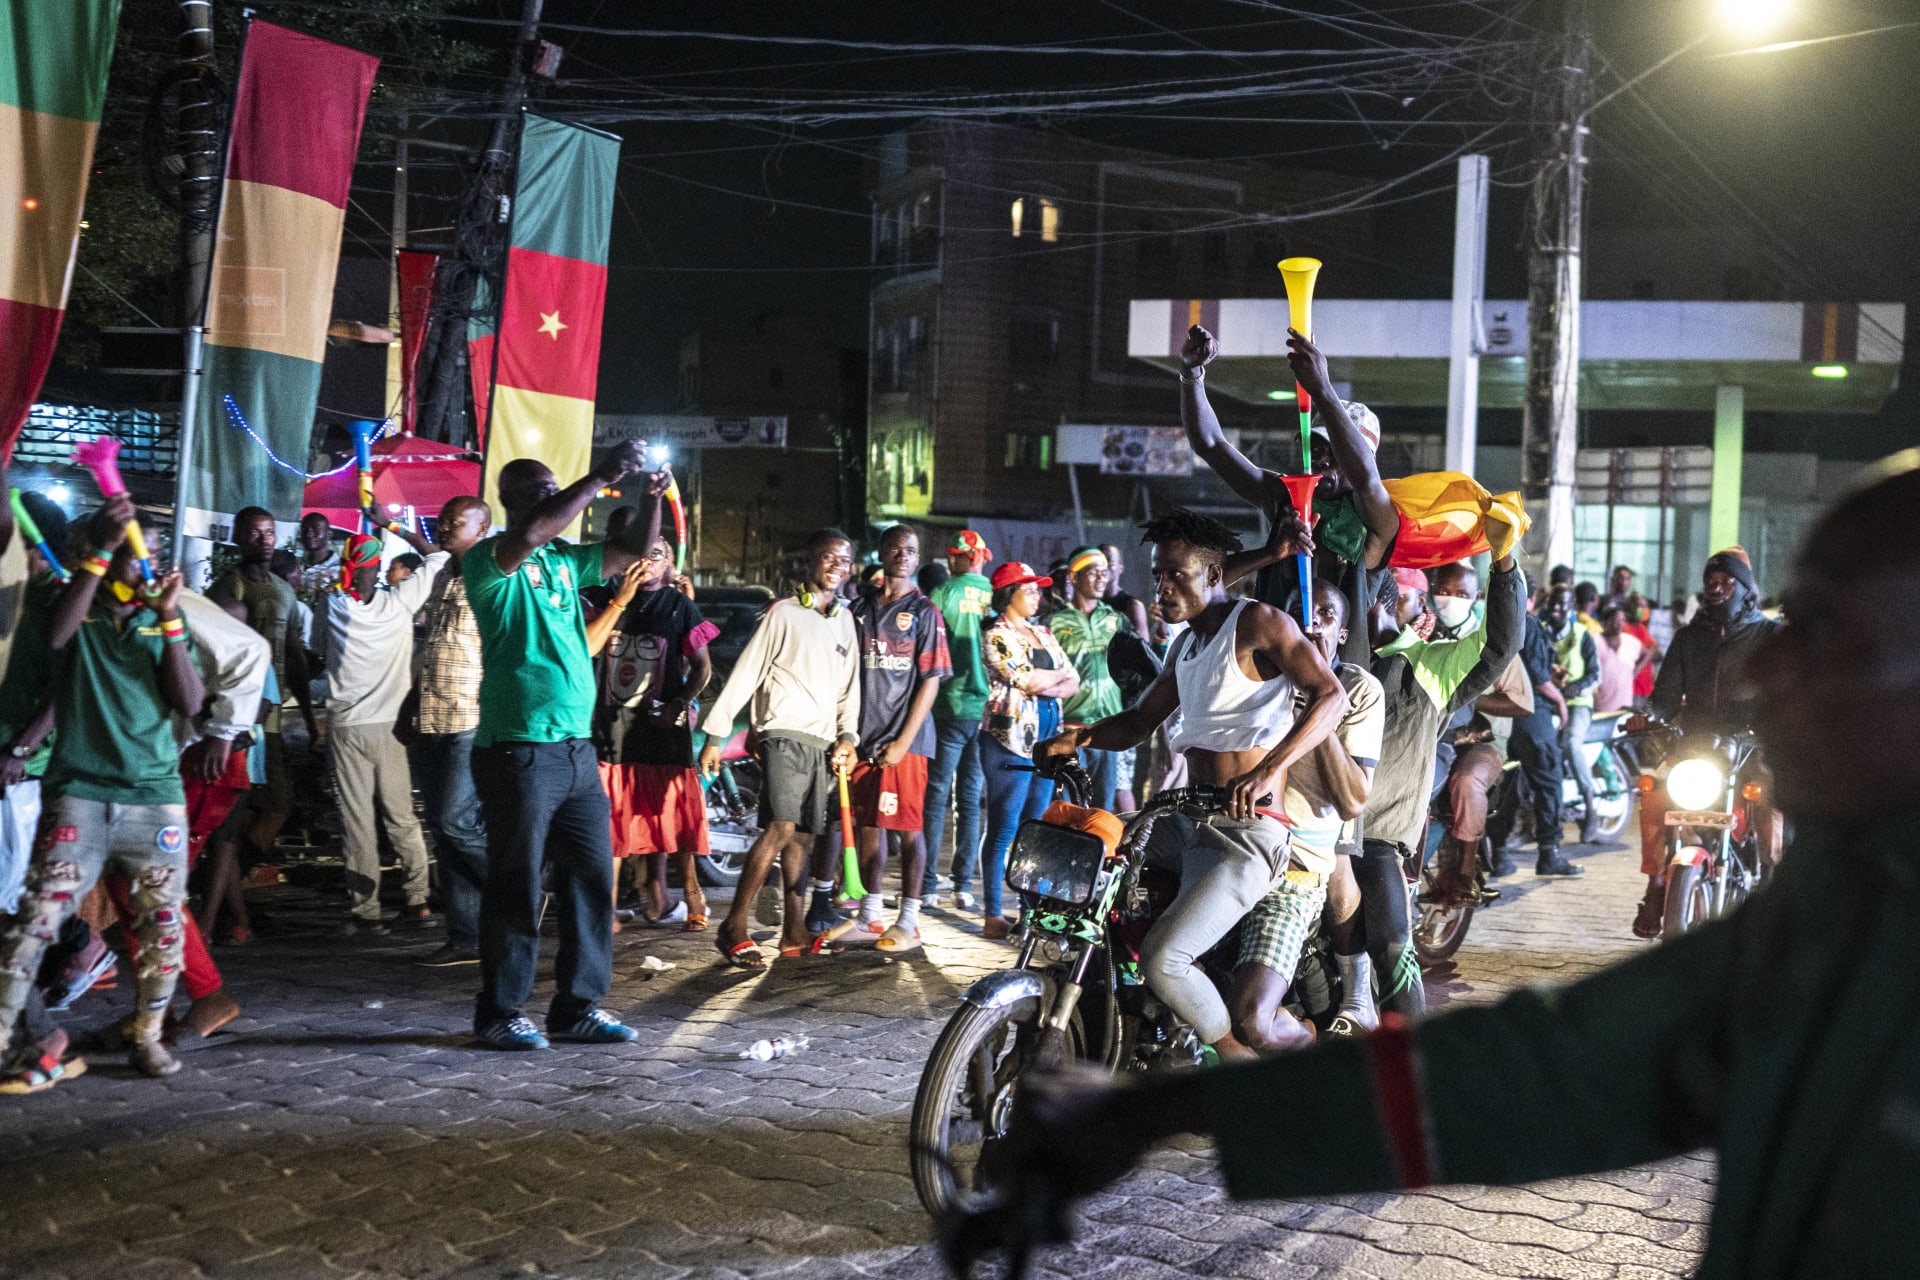 بعض مشجعي الكاميرون يحتفلون بفوز منتخبهم على جزر القمر في المباراة